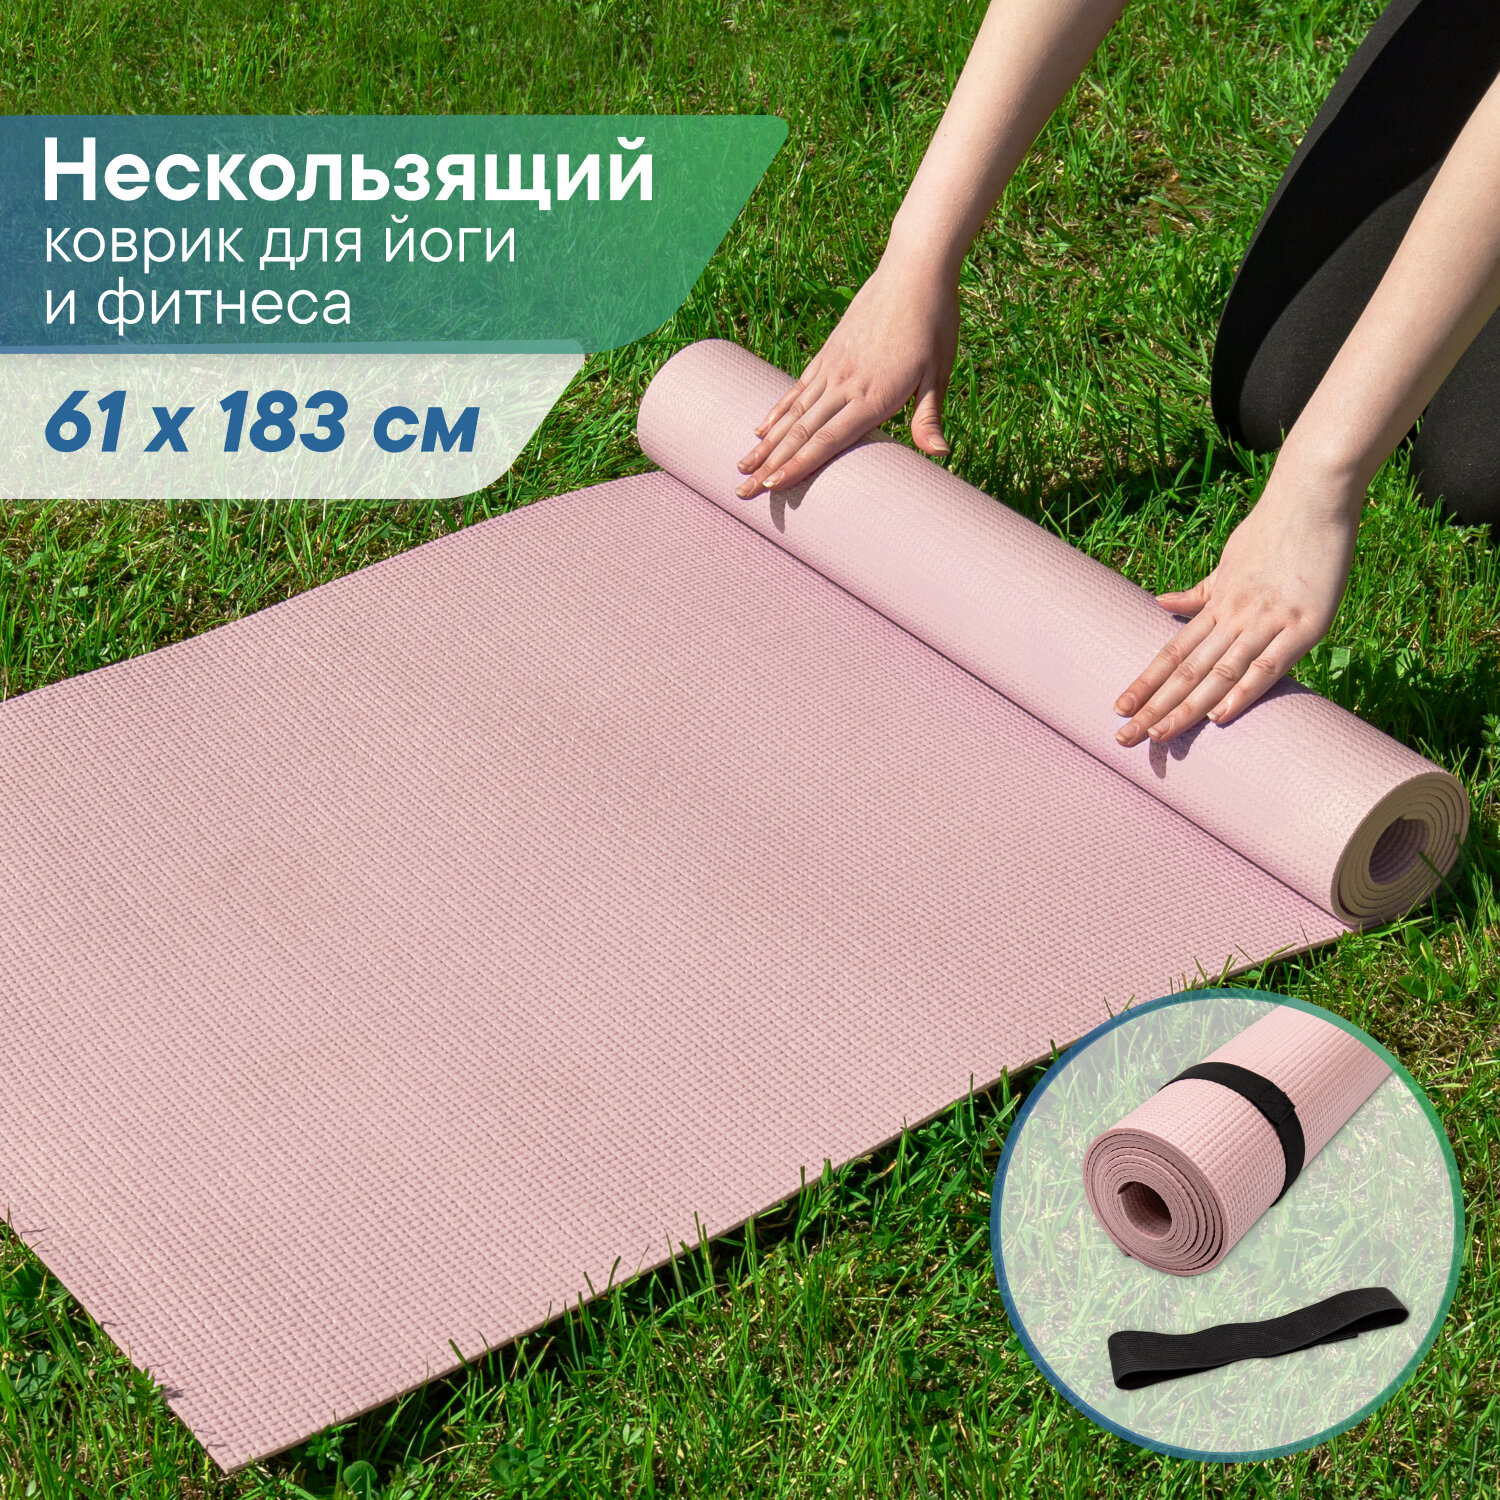 Коврик для спорта VILINA спортивный коврик для йоги и фитнеса, растяжки, гимнастики 0,5 см 61х183 см розовый